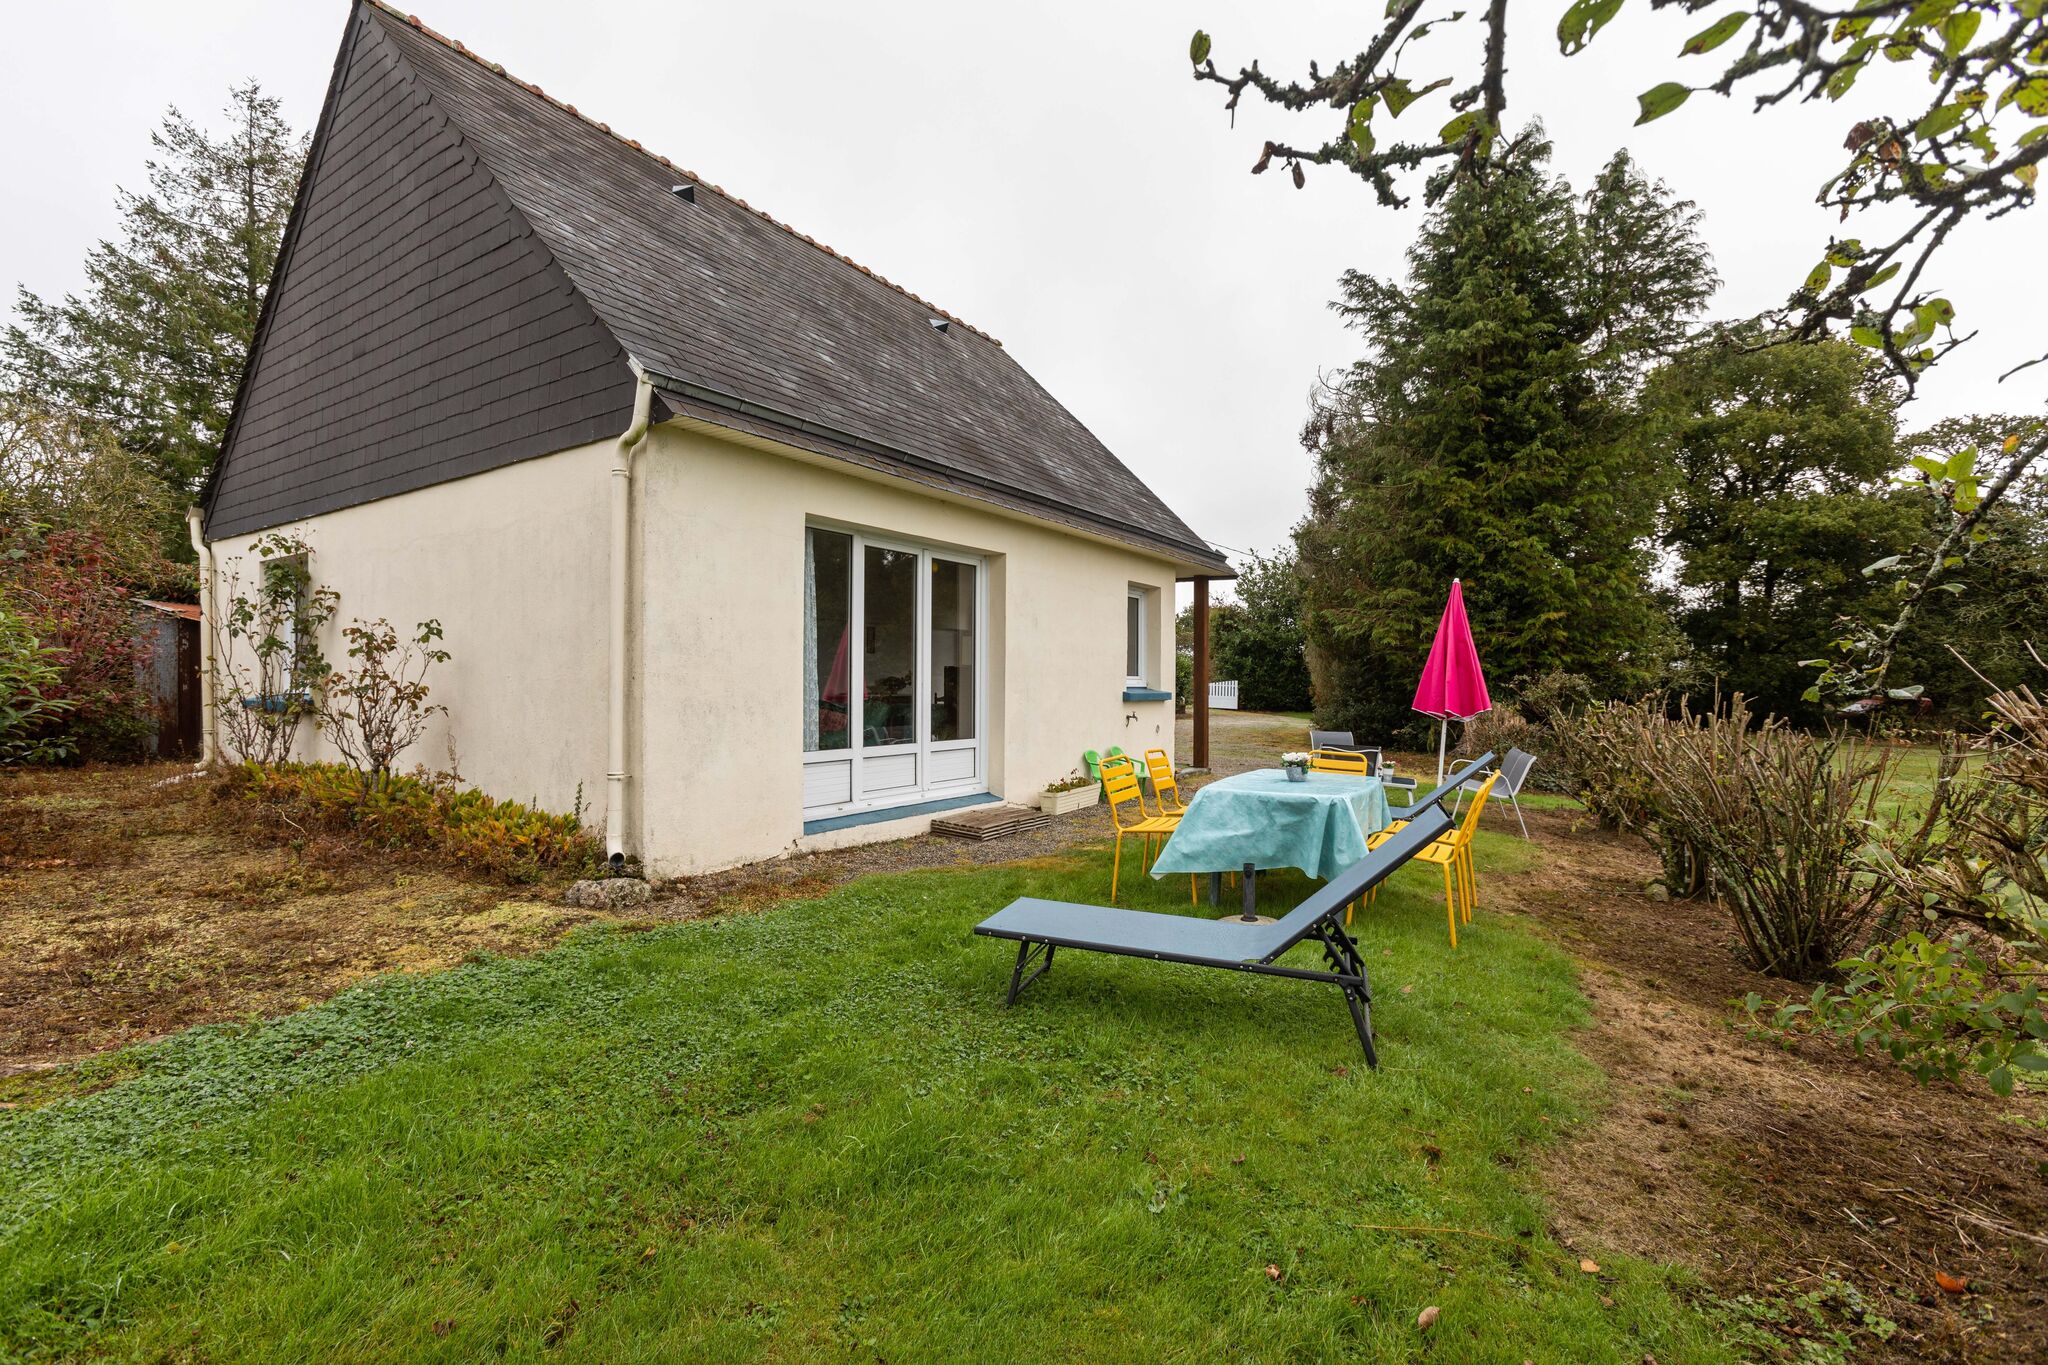 Huis met mooi terras en tuin, centraal in Bretagne gelegen.